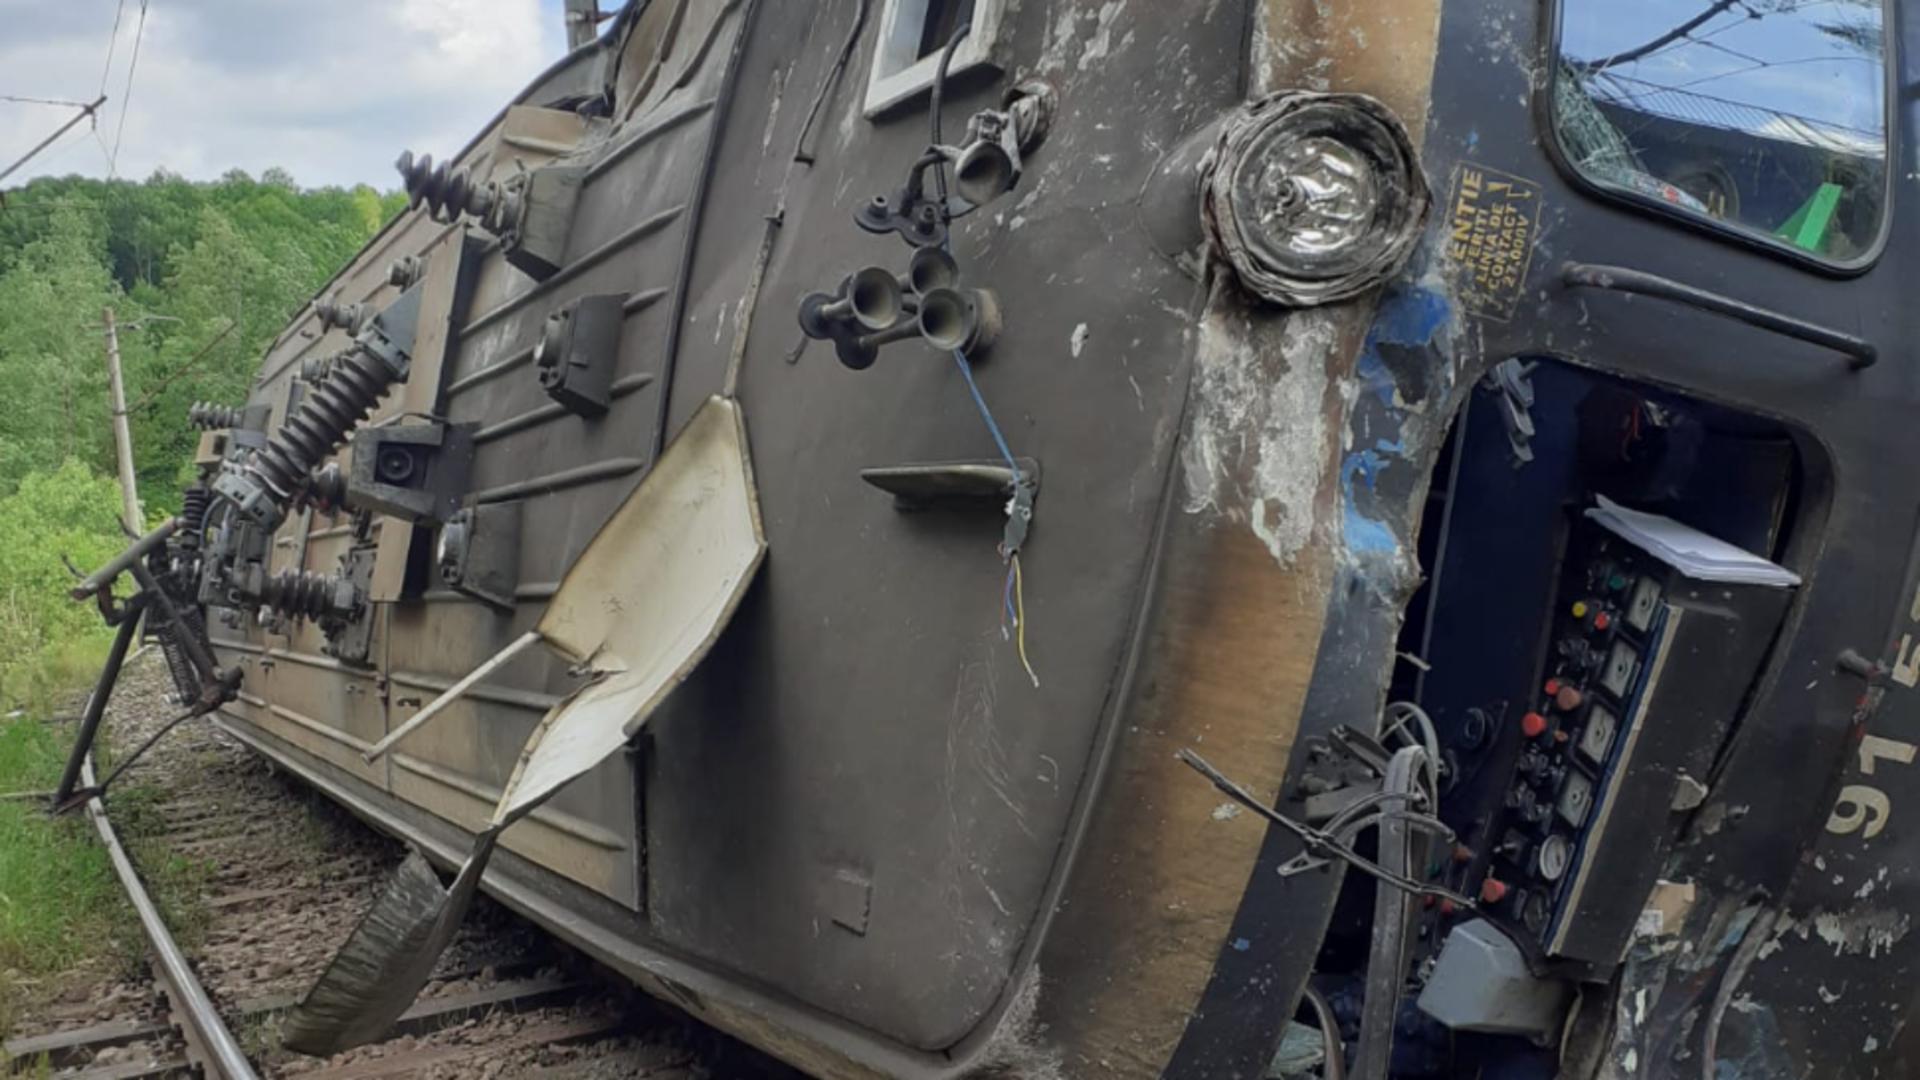 Accident GRAV pe calea ferată, în Hunedoara: O locomotivă a deraiat, iar mecanicul a ajuns la spital - TRAFIC blocat, TRENURI afectate